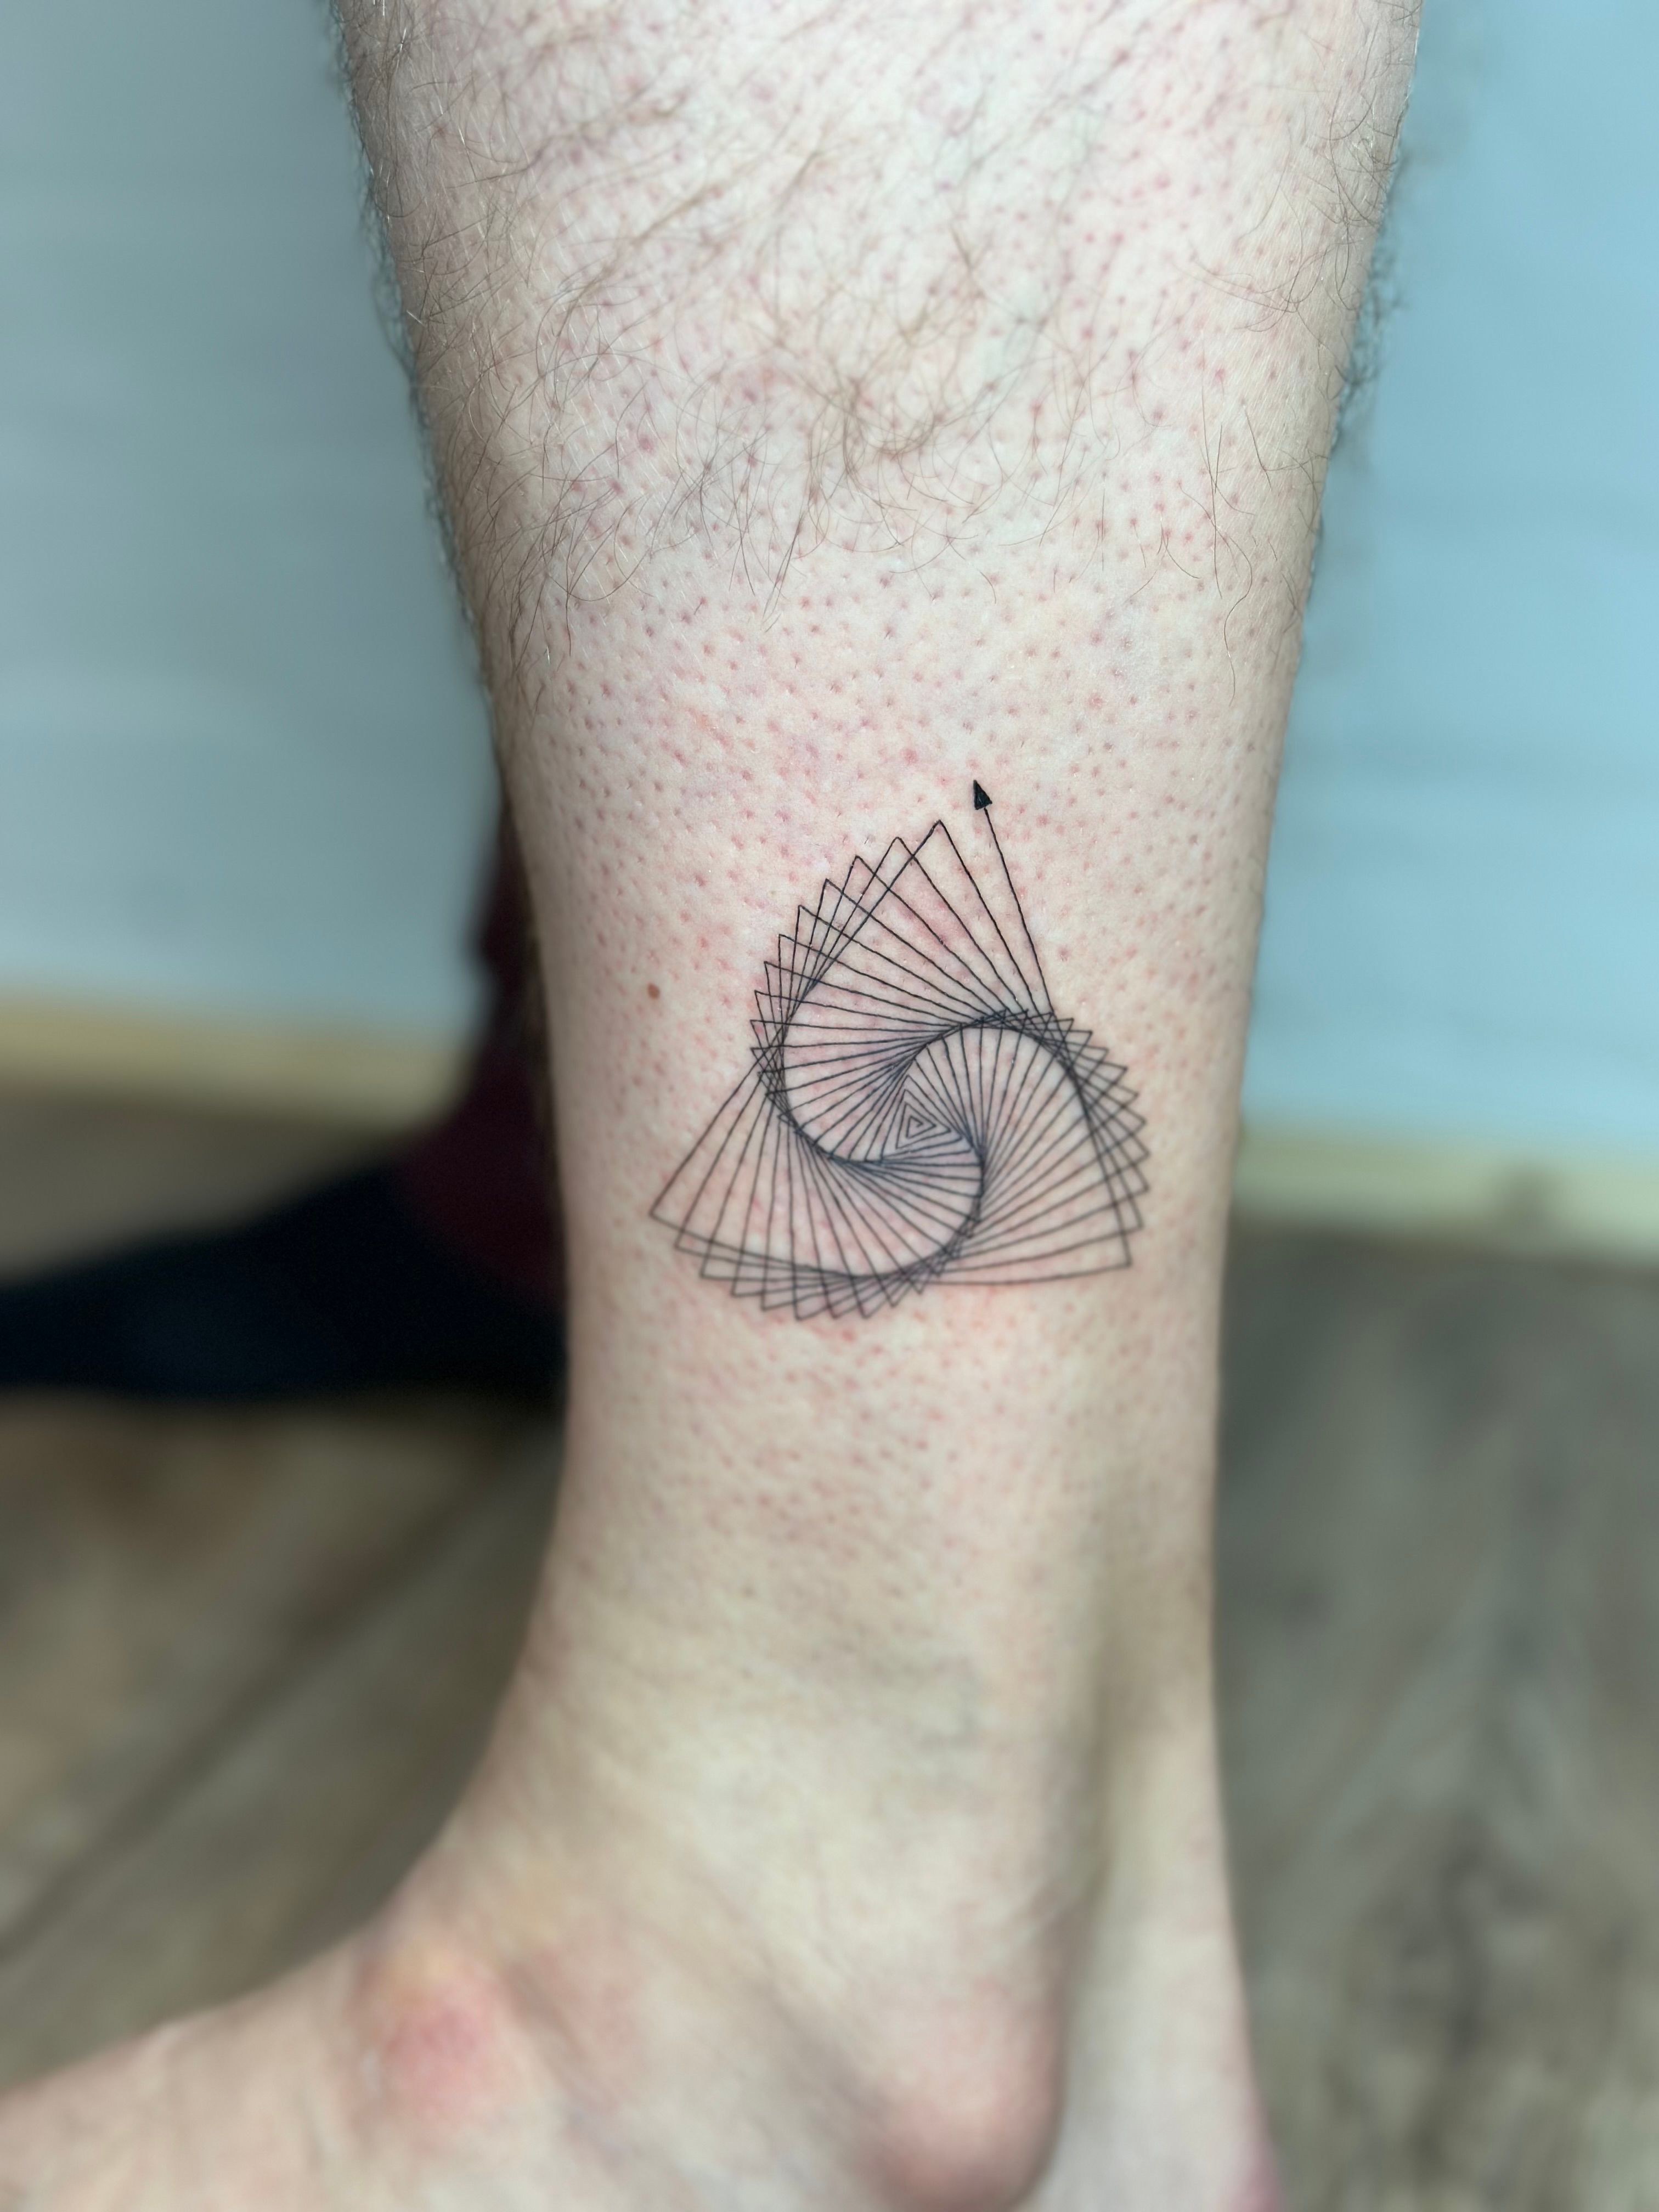 Mesmerizing Spiral Tattoo by UngarTattoo on DeviantArt